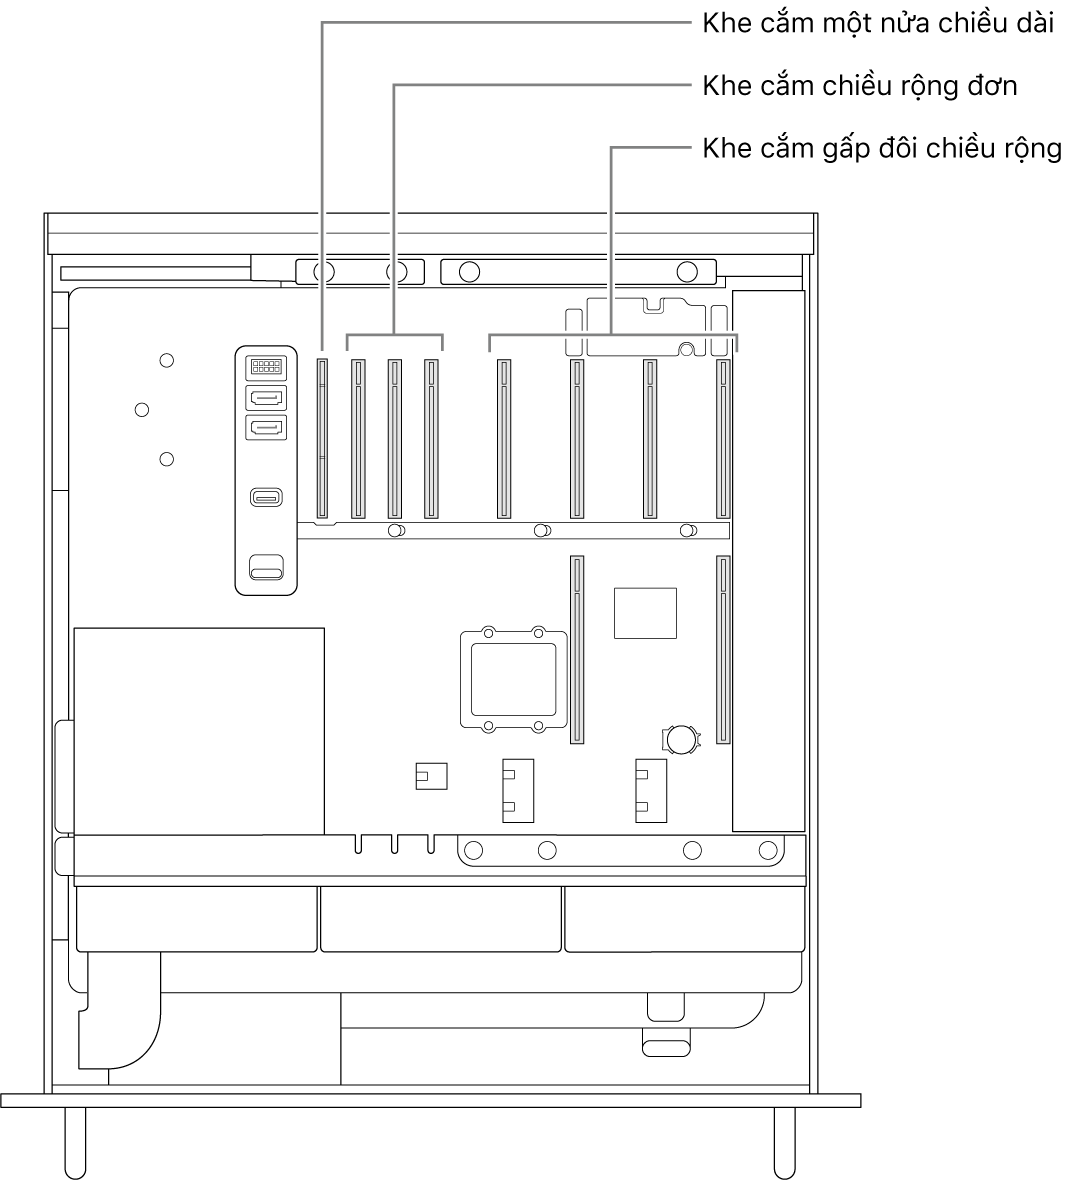 Mặt bên của Mac Pro được mở với các chú thích minh họa vị trí của bốn khe cắm gấp đôi chiều rộng, ba khe cắm chiều rộng đơn và khe cắm một nửa chiều dài.